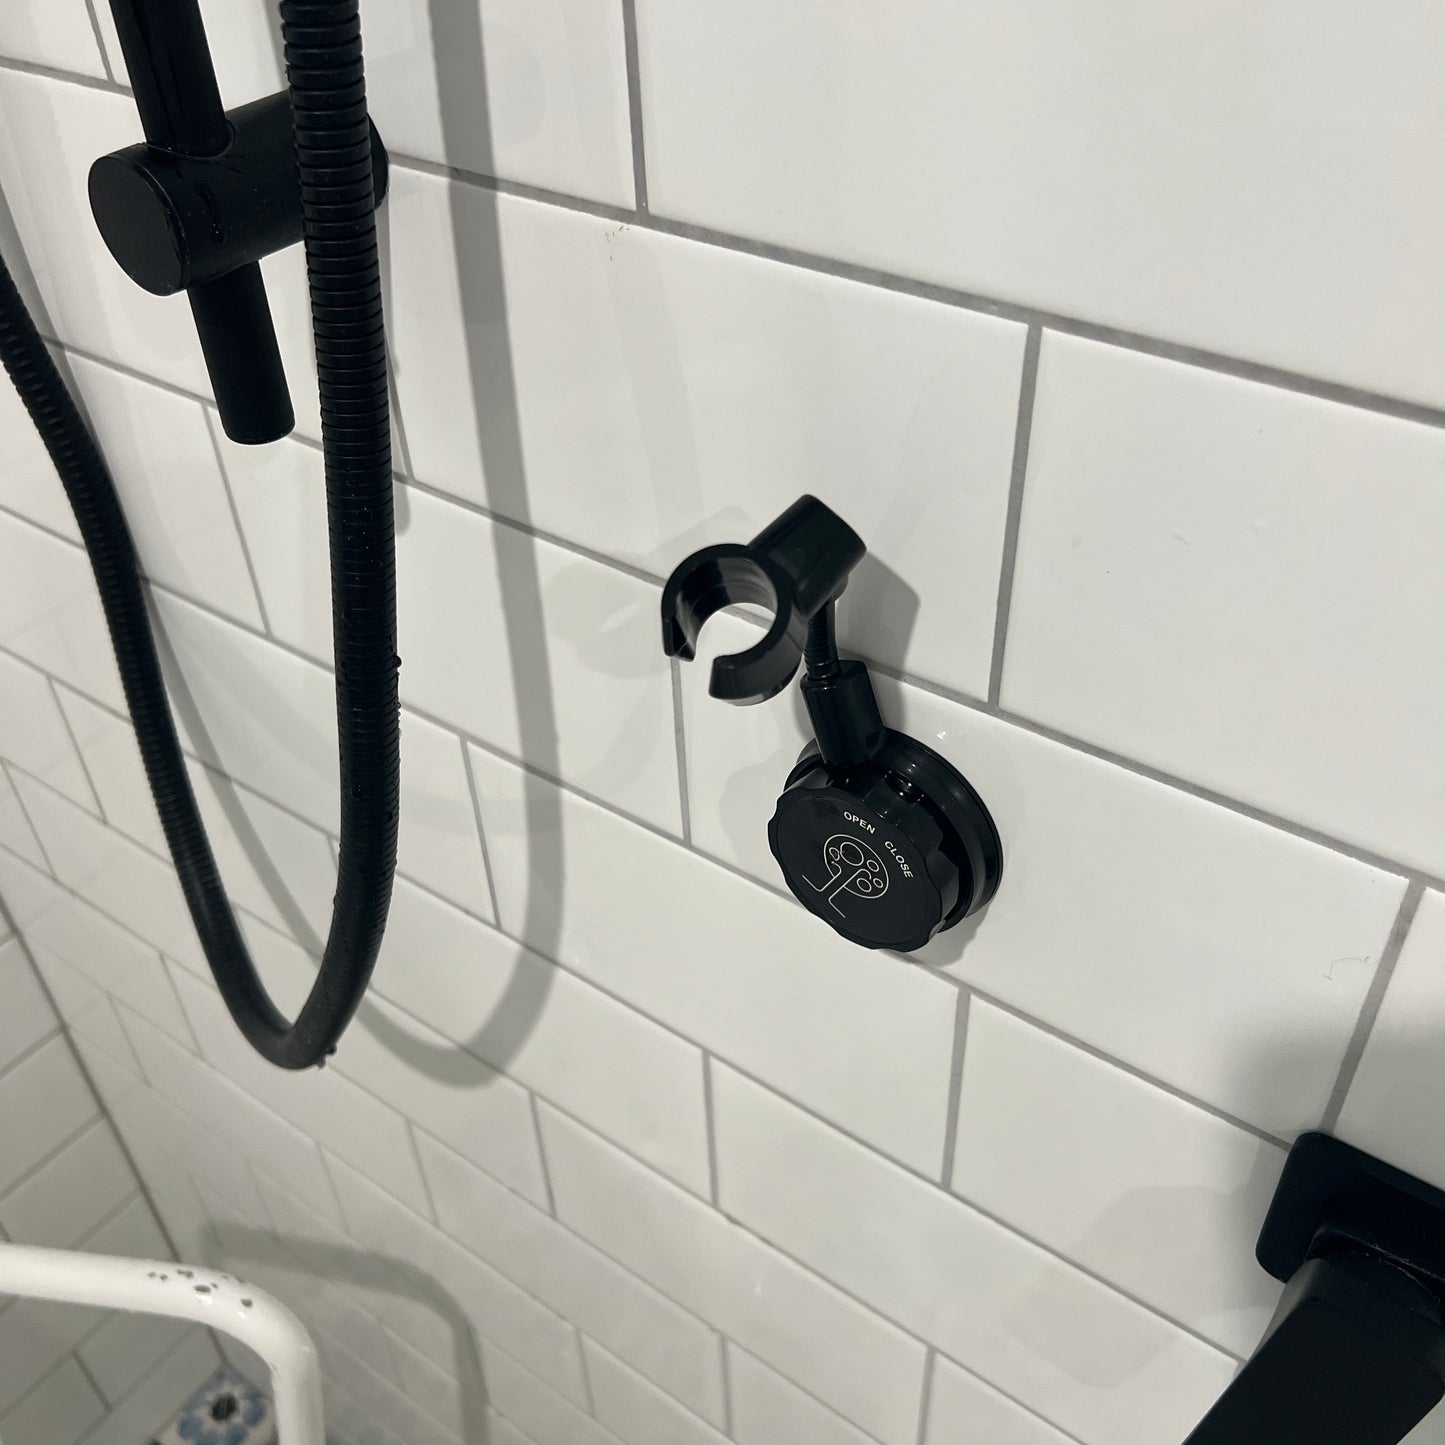 Adjustable Suction Shower Holder